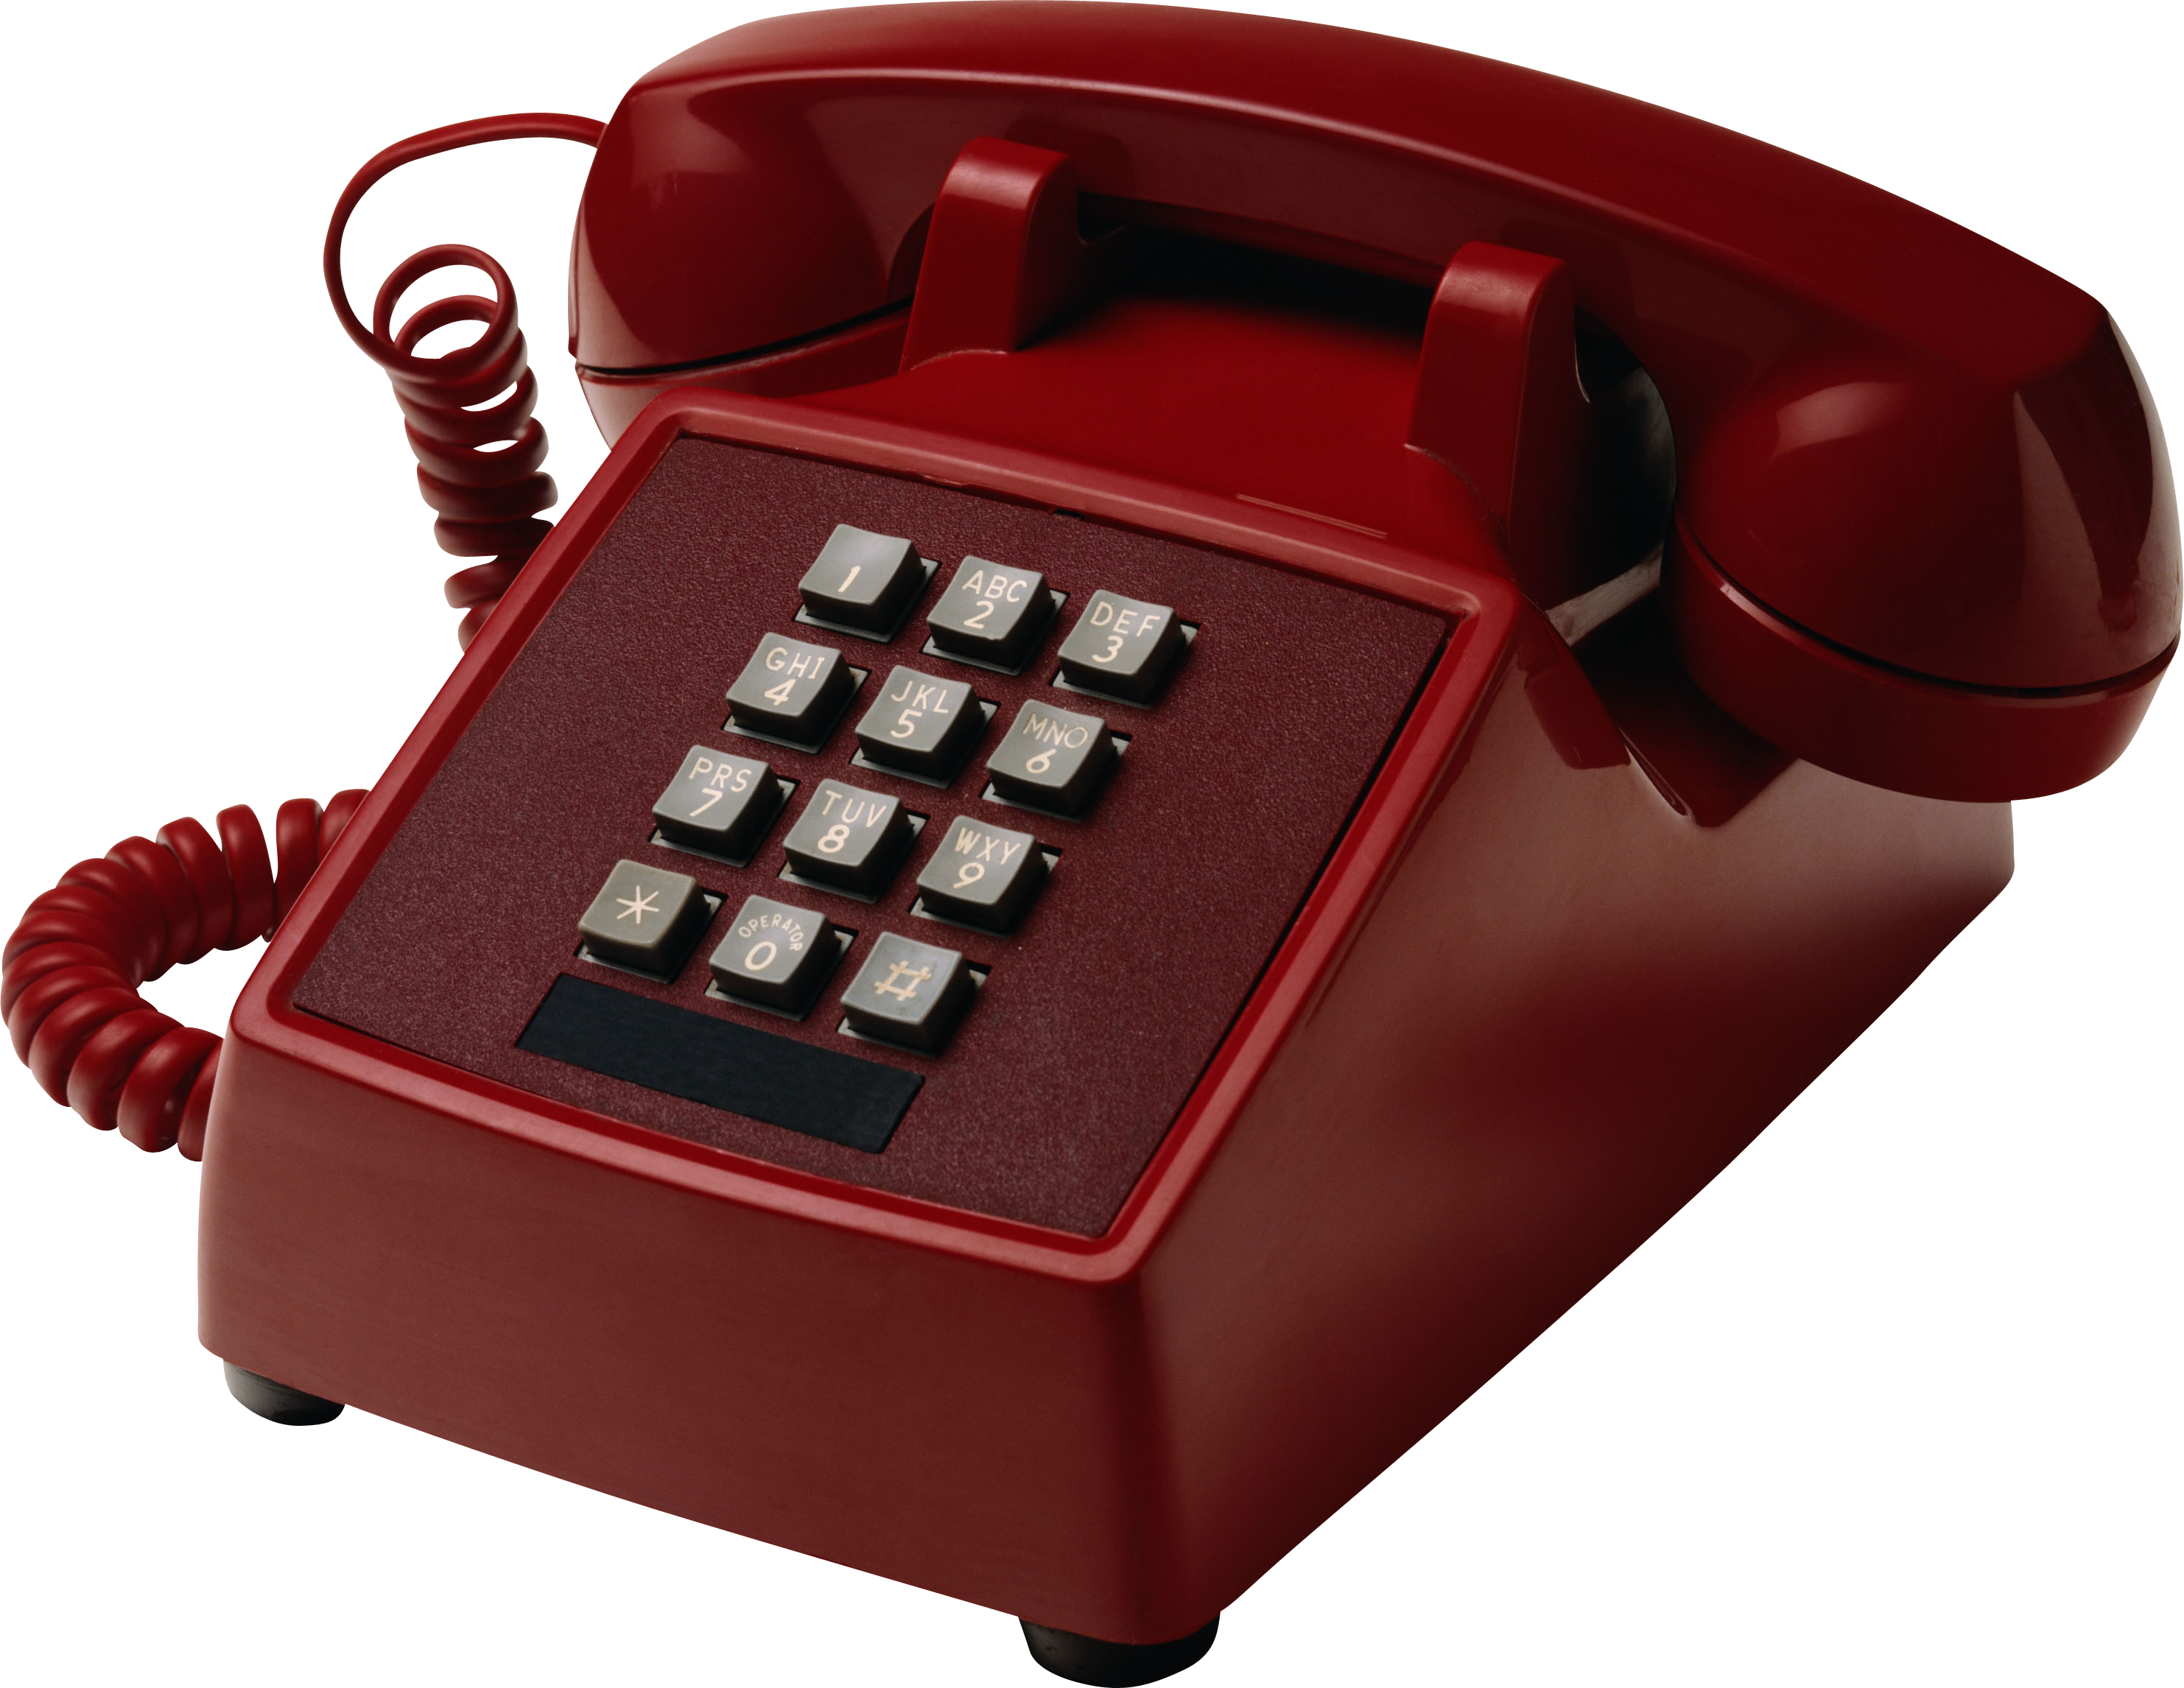 Phone. Телефон. Домашний телефон. Красный телефон. Телефонный аппарат на прозрачном фоне.